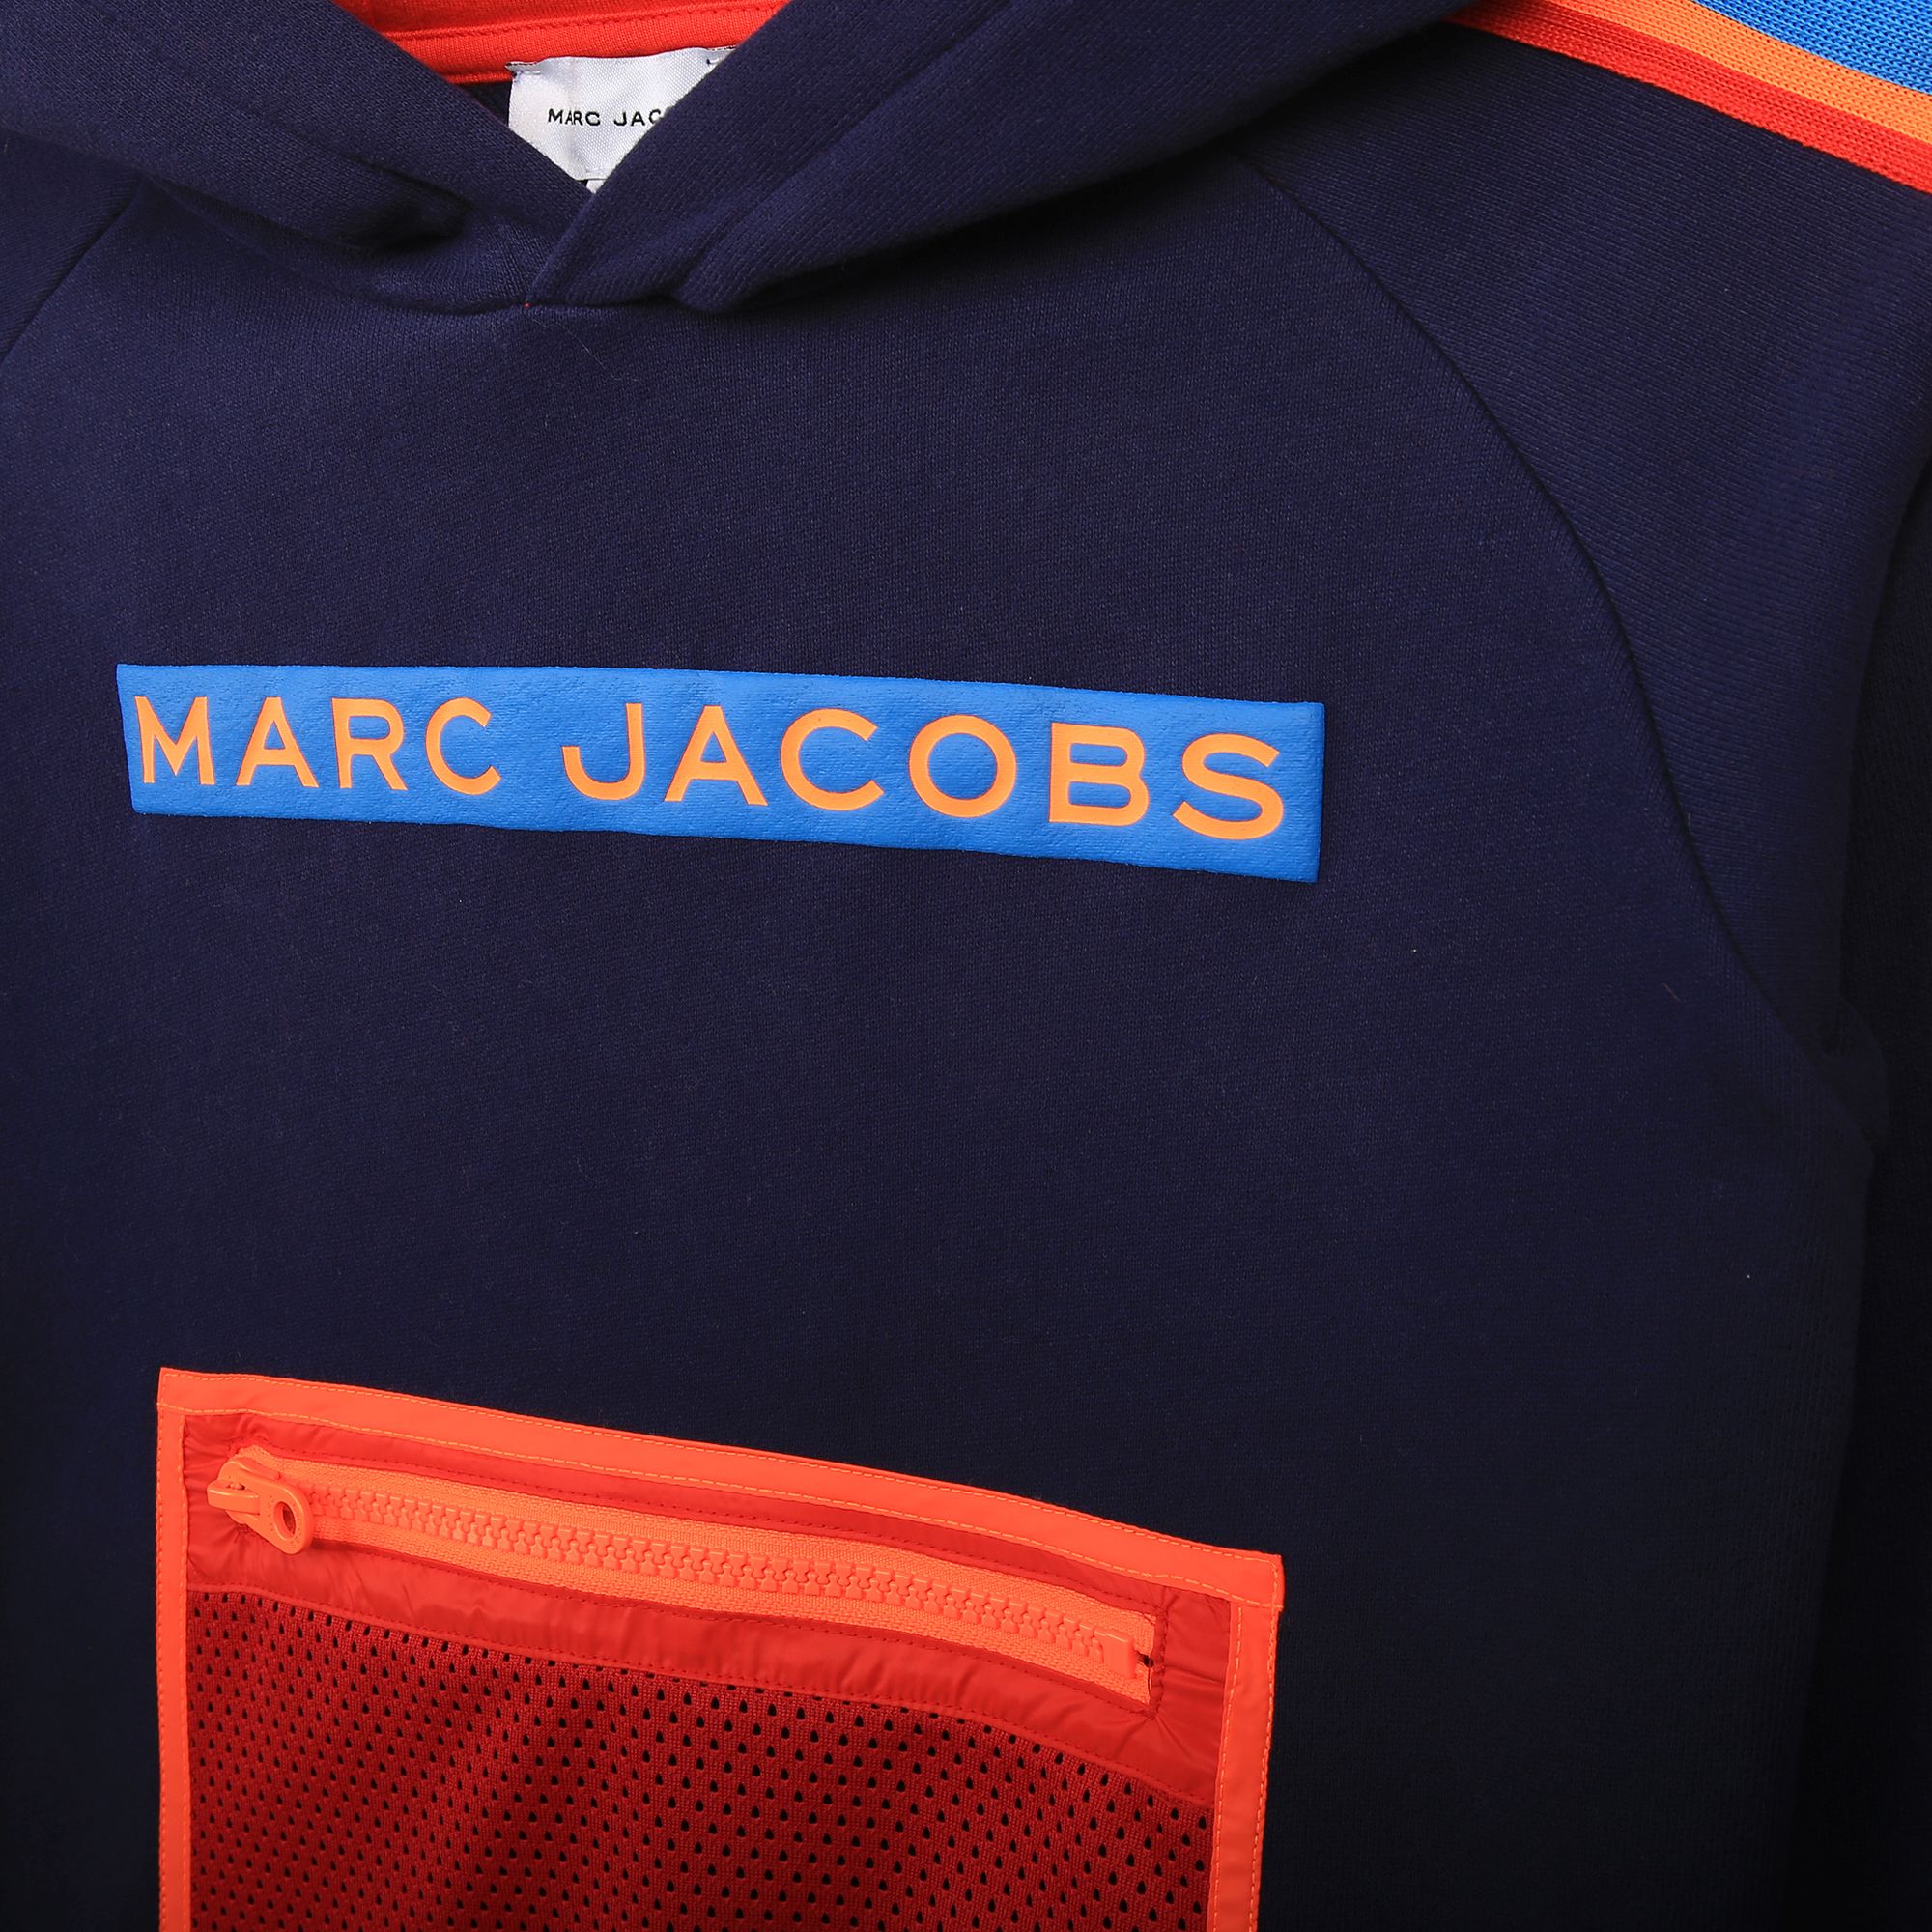 Sweater met capuchon MARC JACOBS Voor